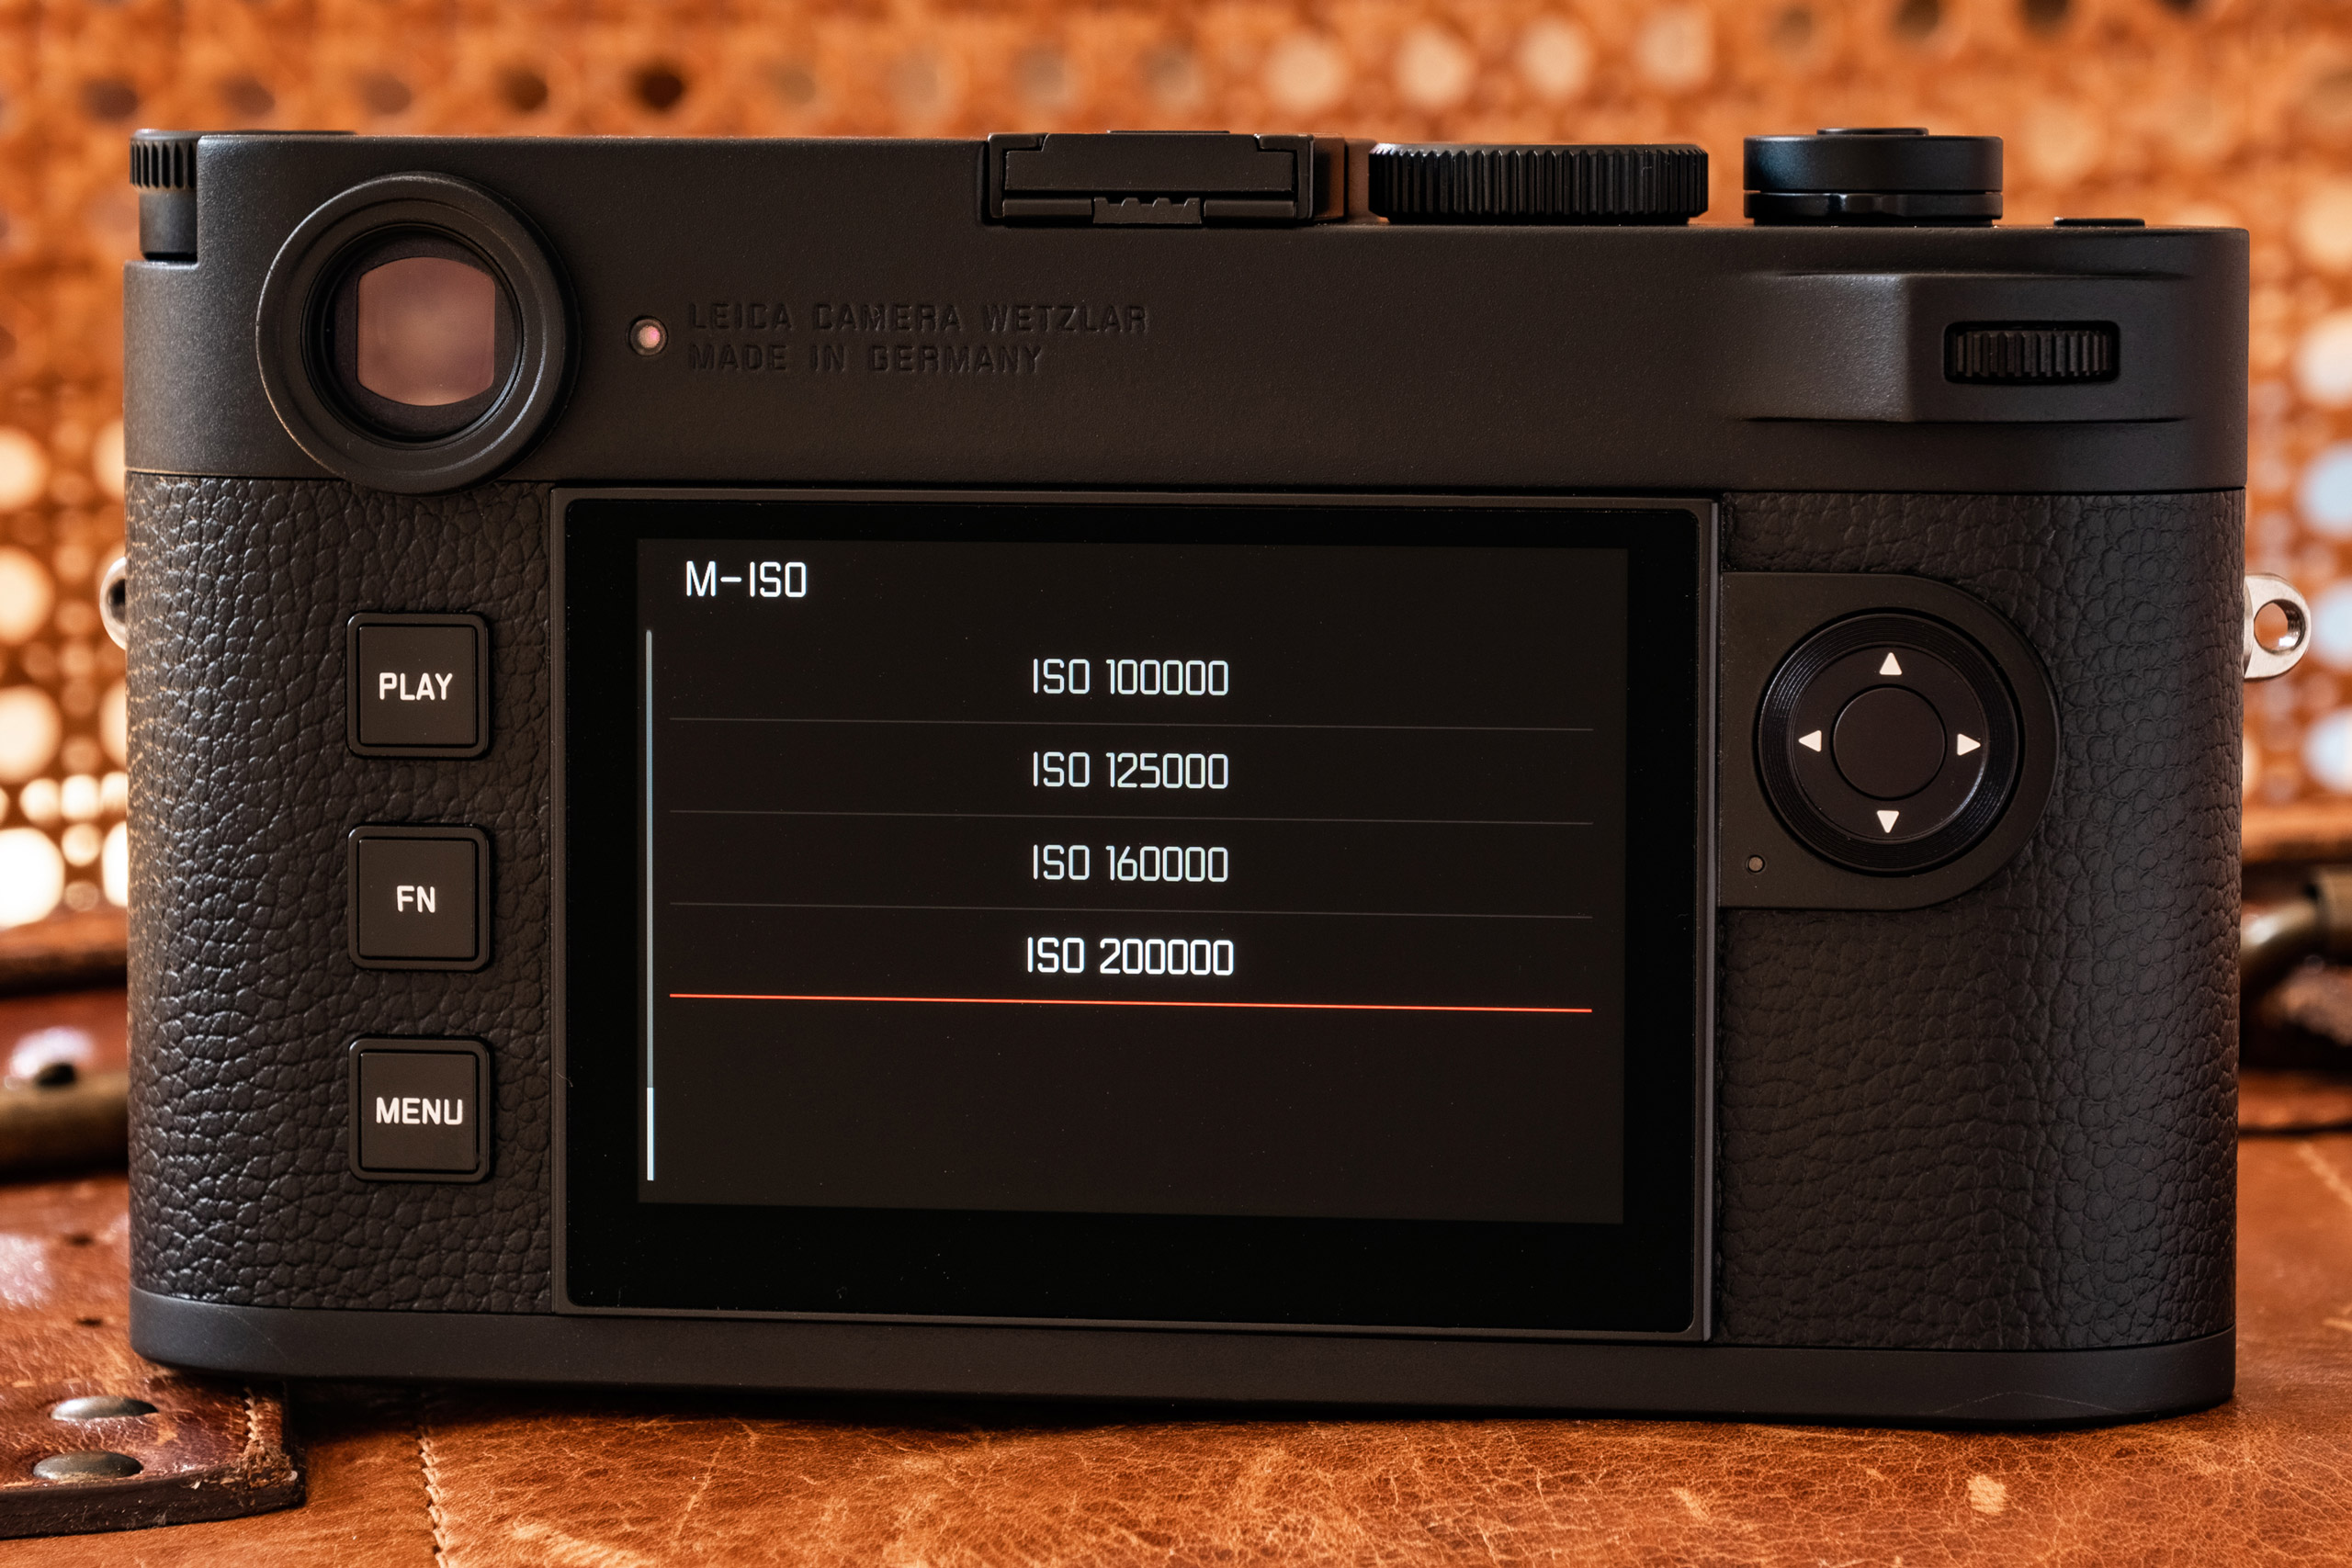 Leica M10-R review - Amateur Photographer